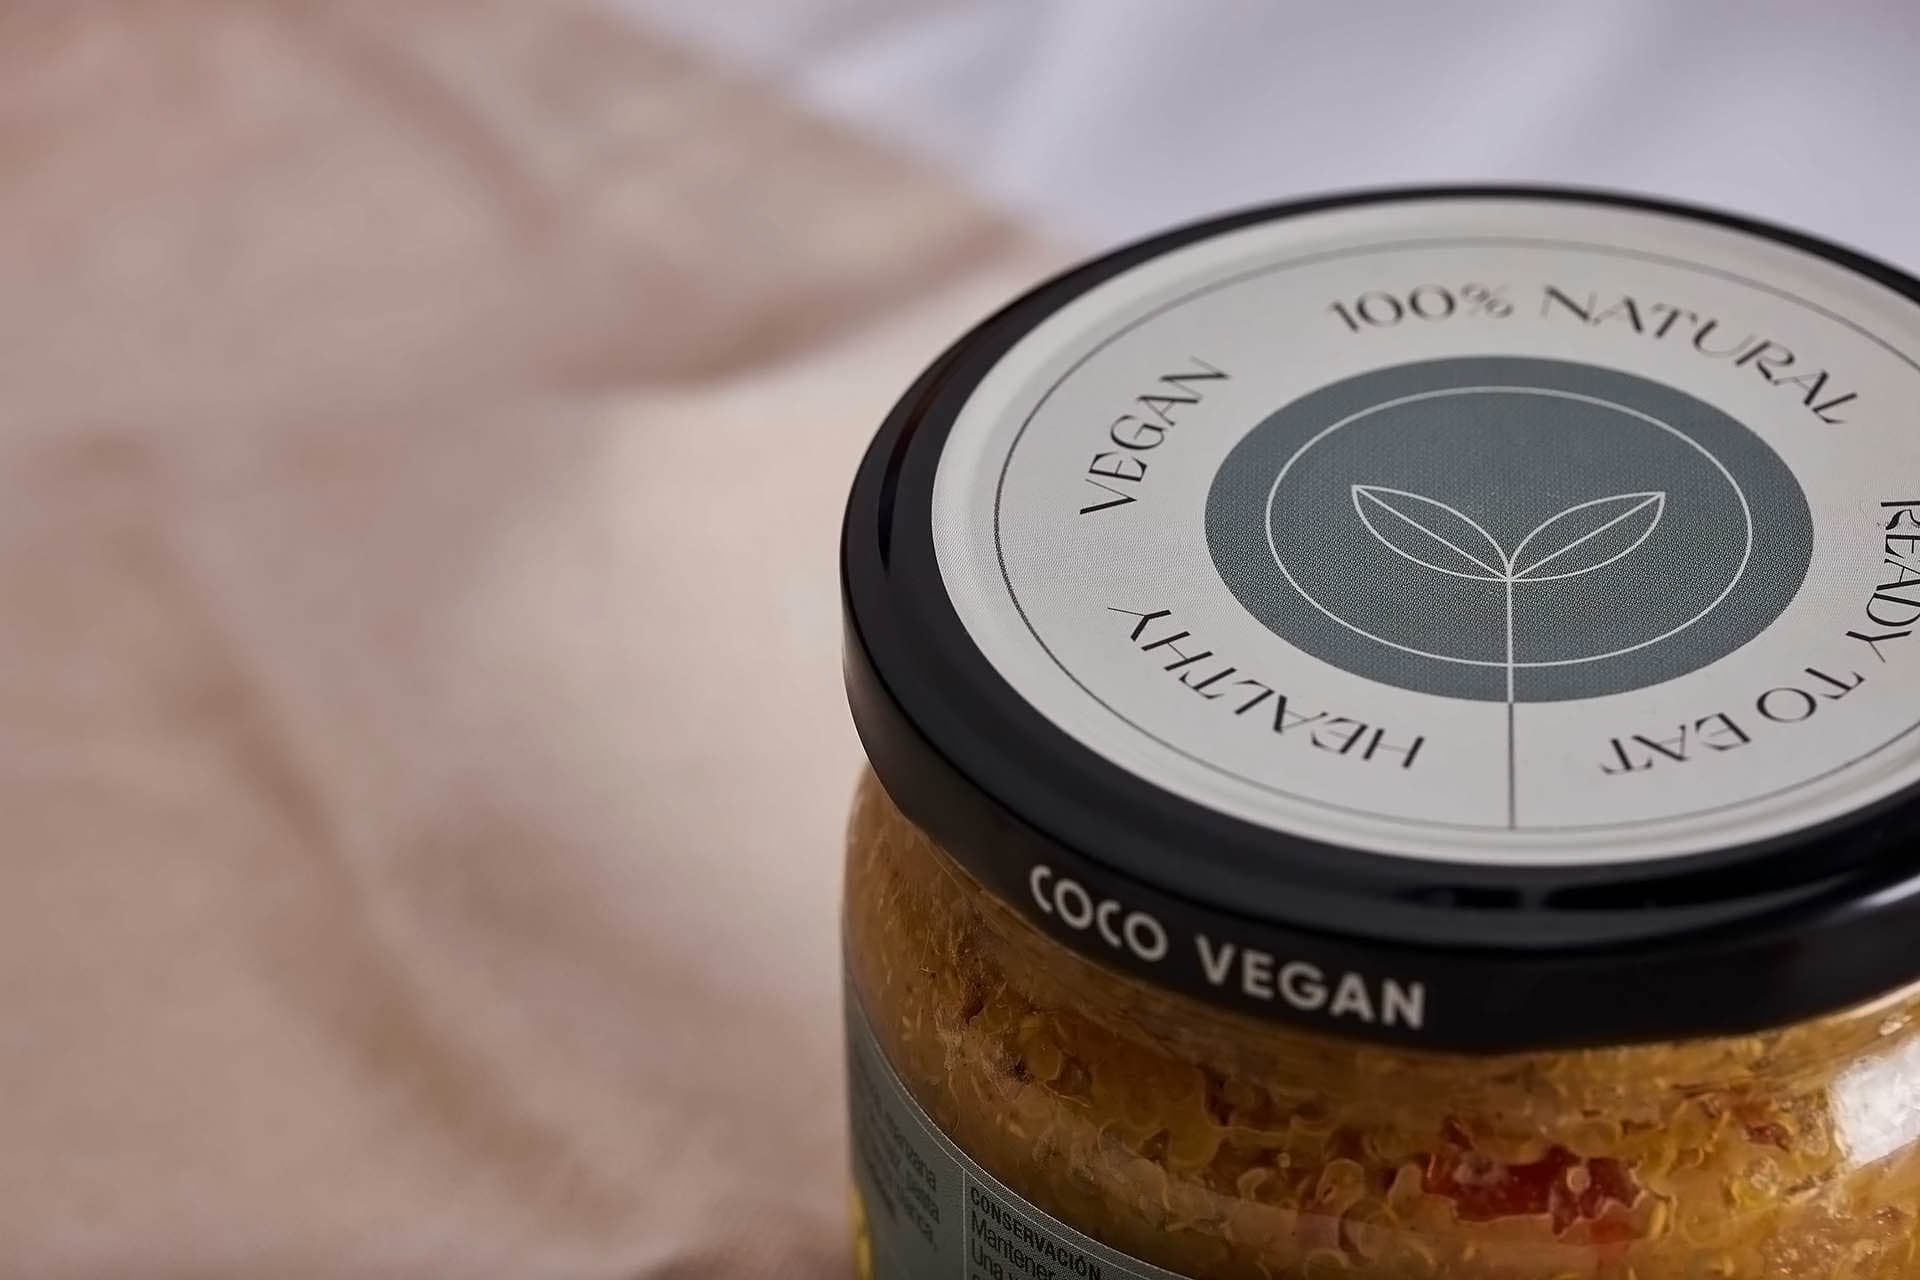 Diseño de identidad y packaging para Coco Vegan, marca de productos valenciana veganos y listos para comer.